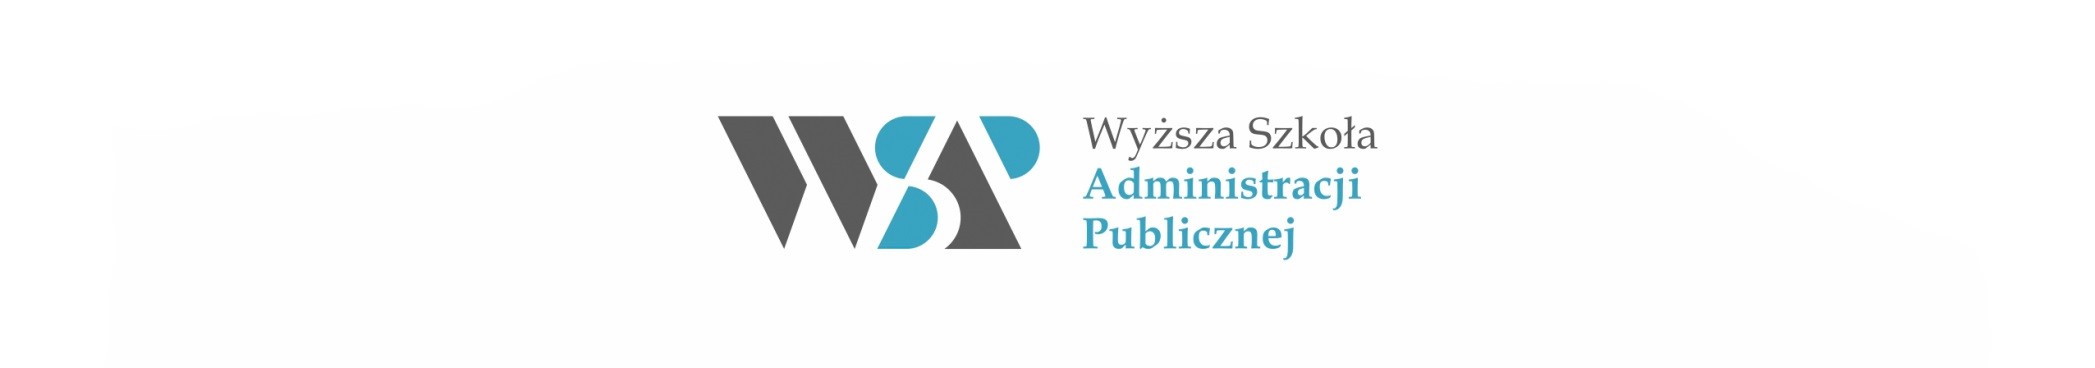 Logo Wyższa Szkoła Administracji Publicznej w Szczecinie